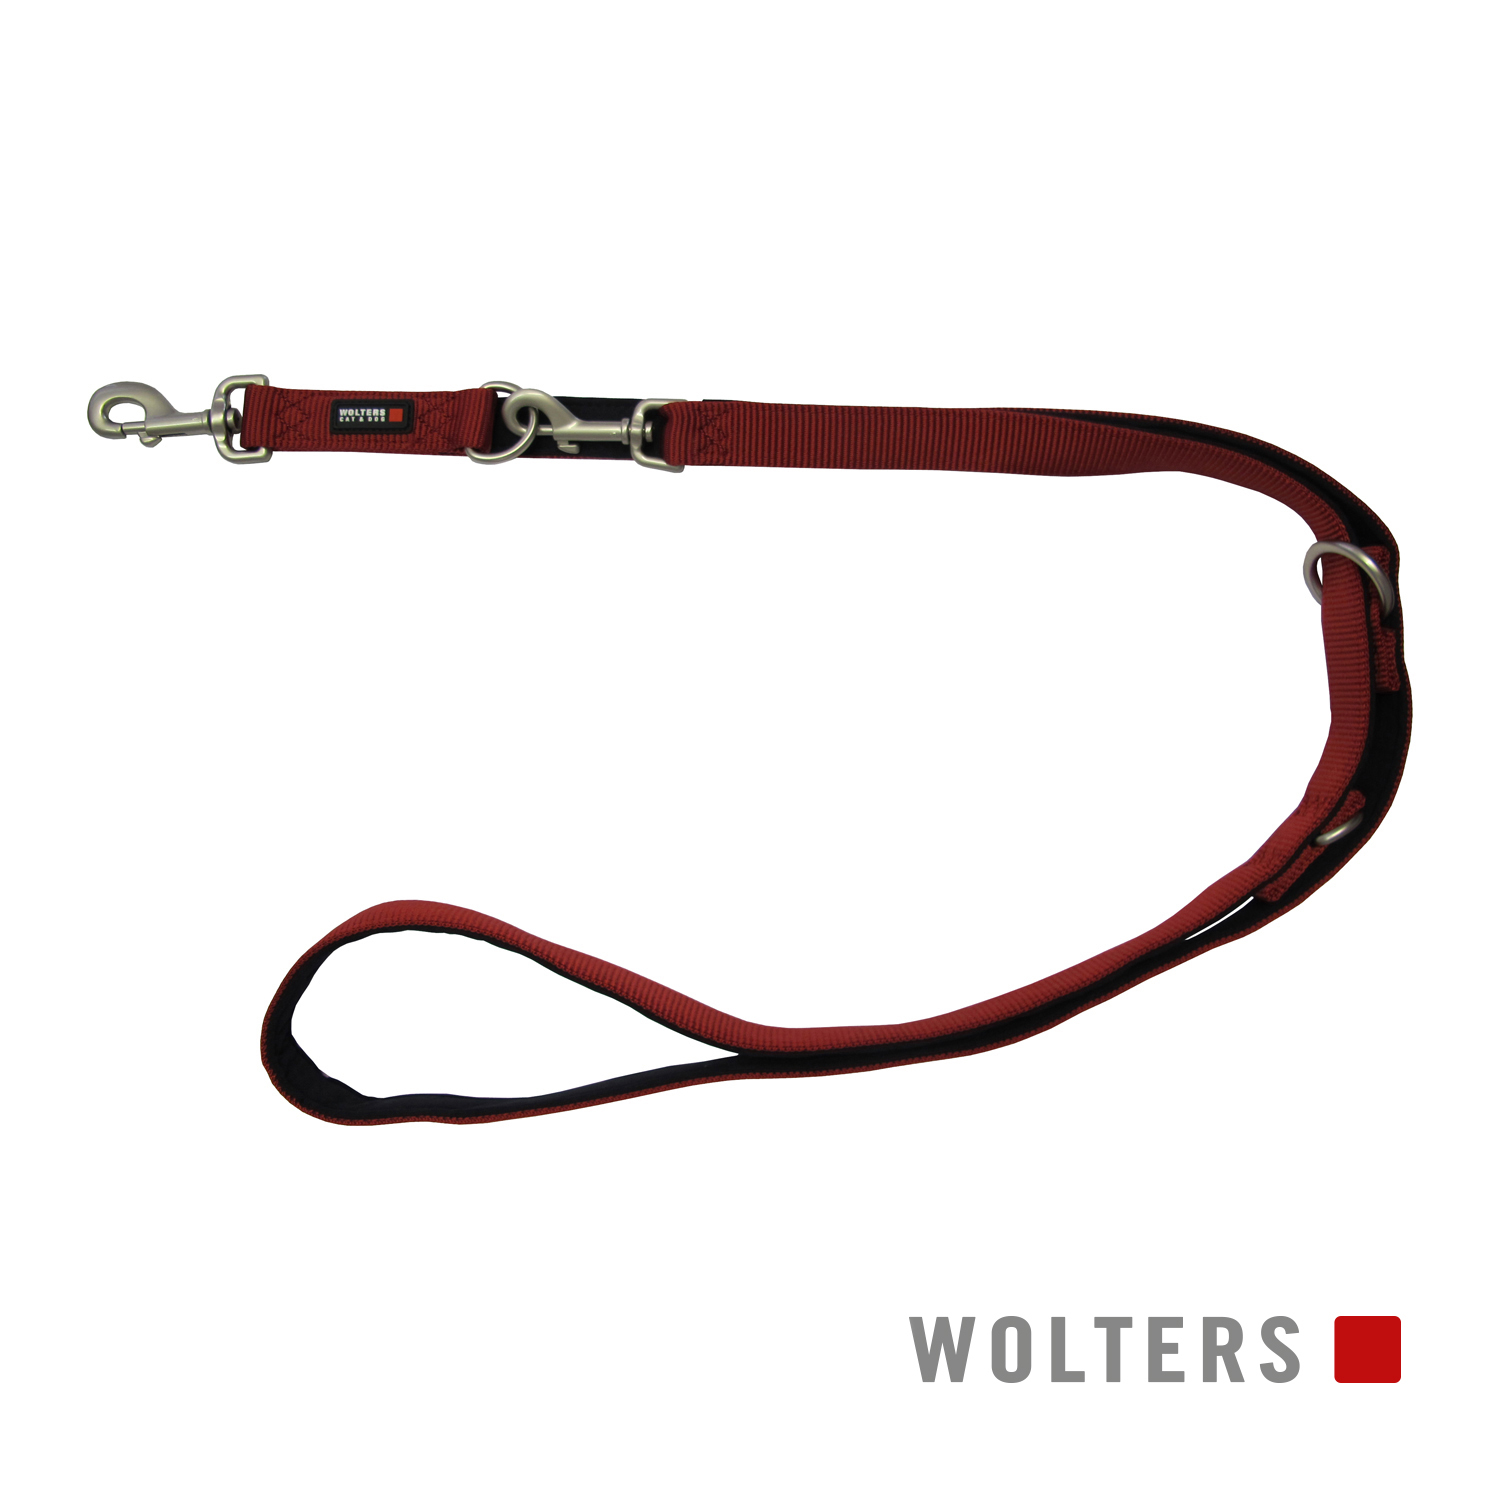 Wolters Führleine Professional Comfort Rot/Schwarz 25mm